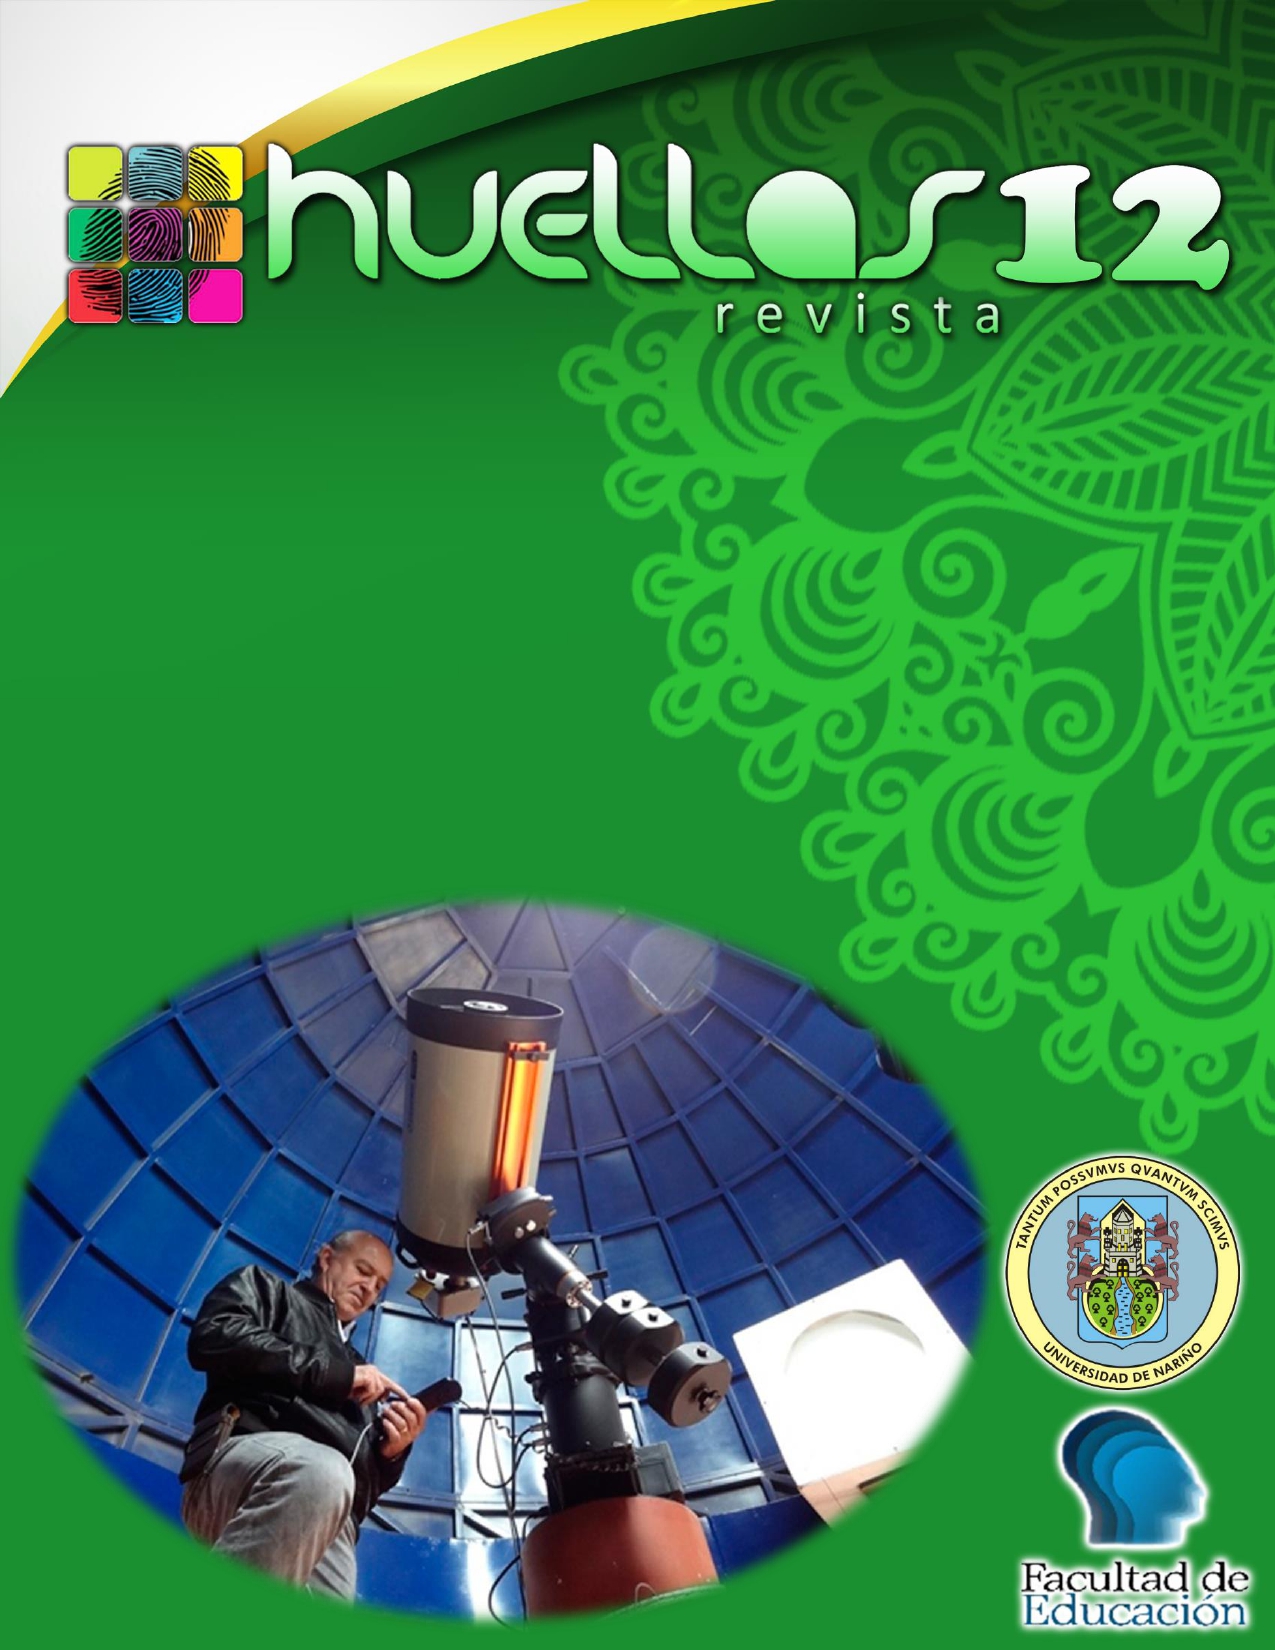 					View Vol. 6 No. 2 (2020): Huellas Revista N° 12
				